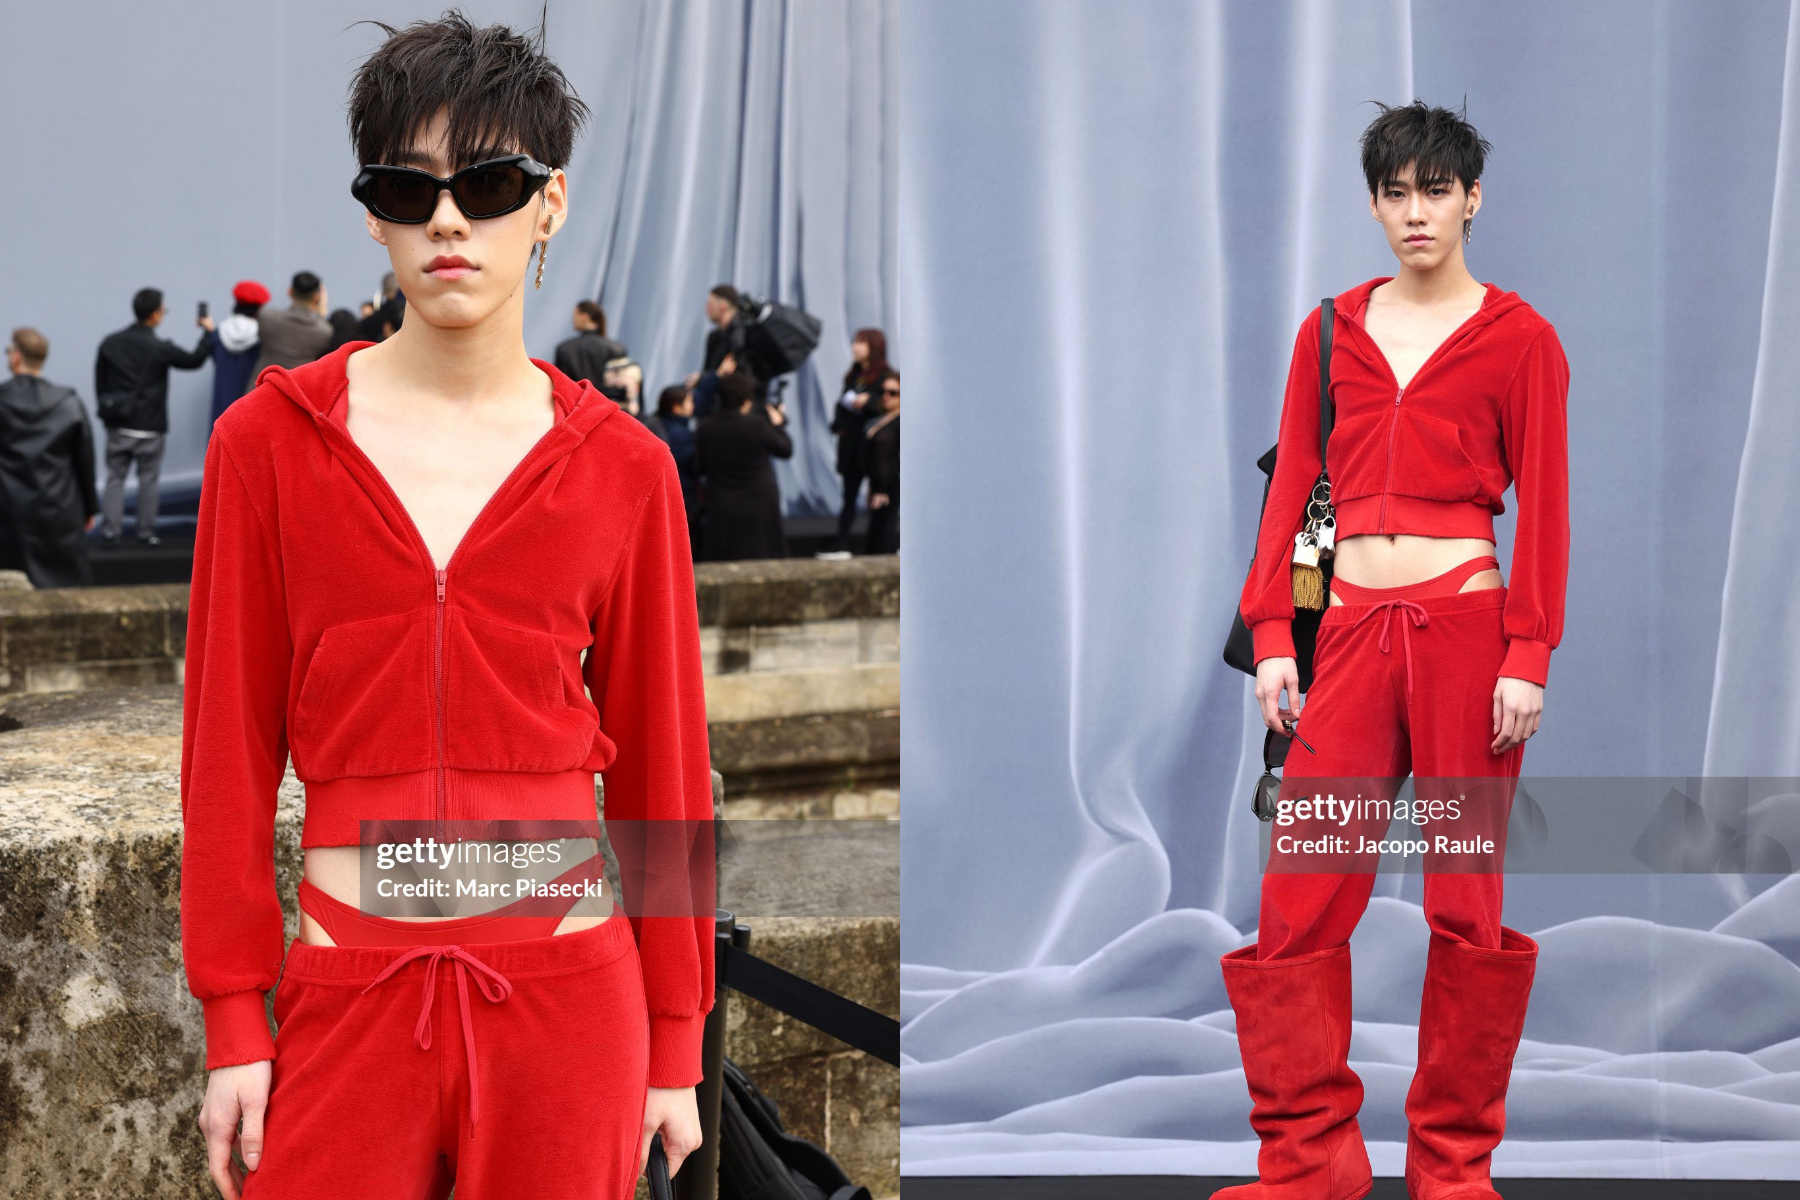 Dàn sao Thái qua “ống kính hung thần” Getty Images ở Paris Fashion Week: Lisa thần thái ngút ngàn, Baifern - Mai Davika và các mỹ nhân khác thì sao? - Ảnh 20.